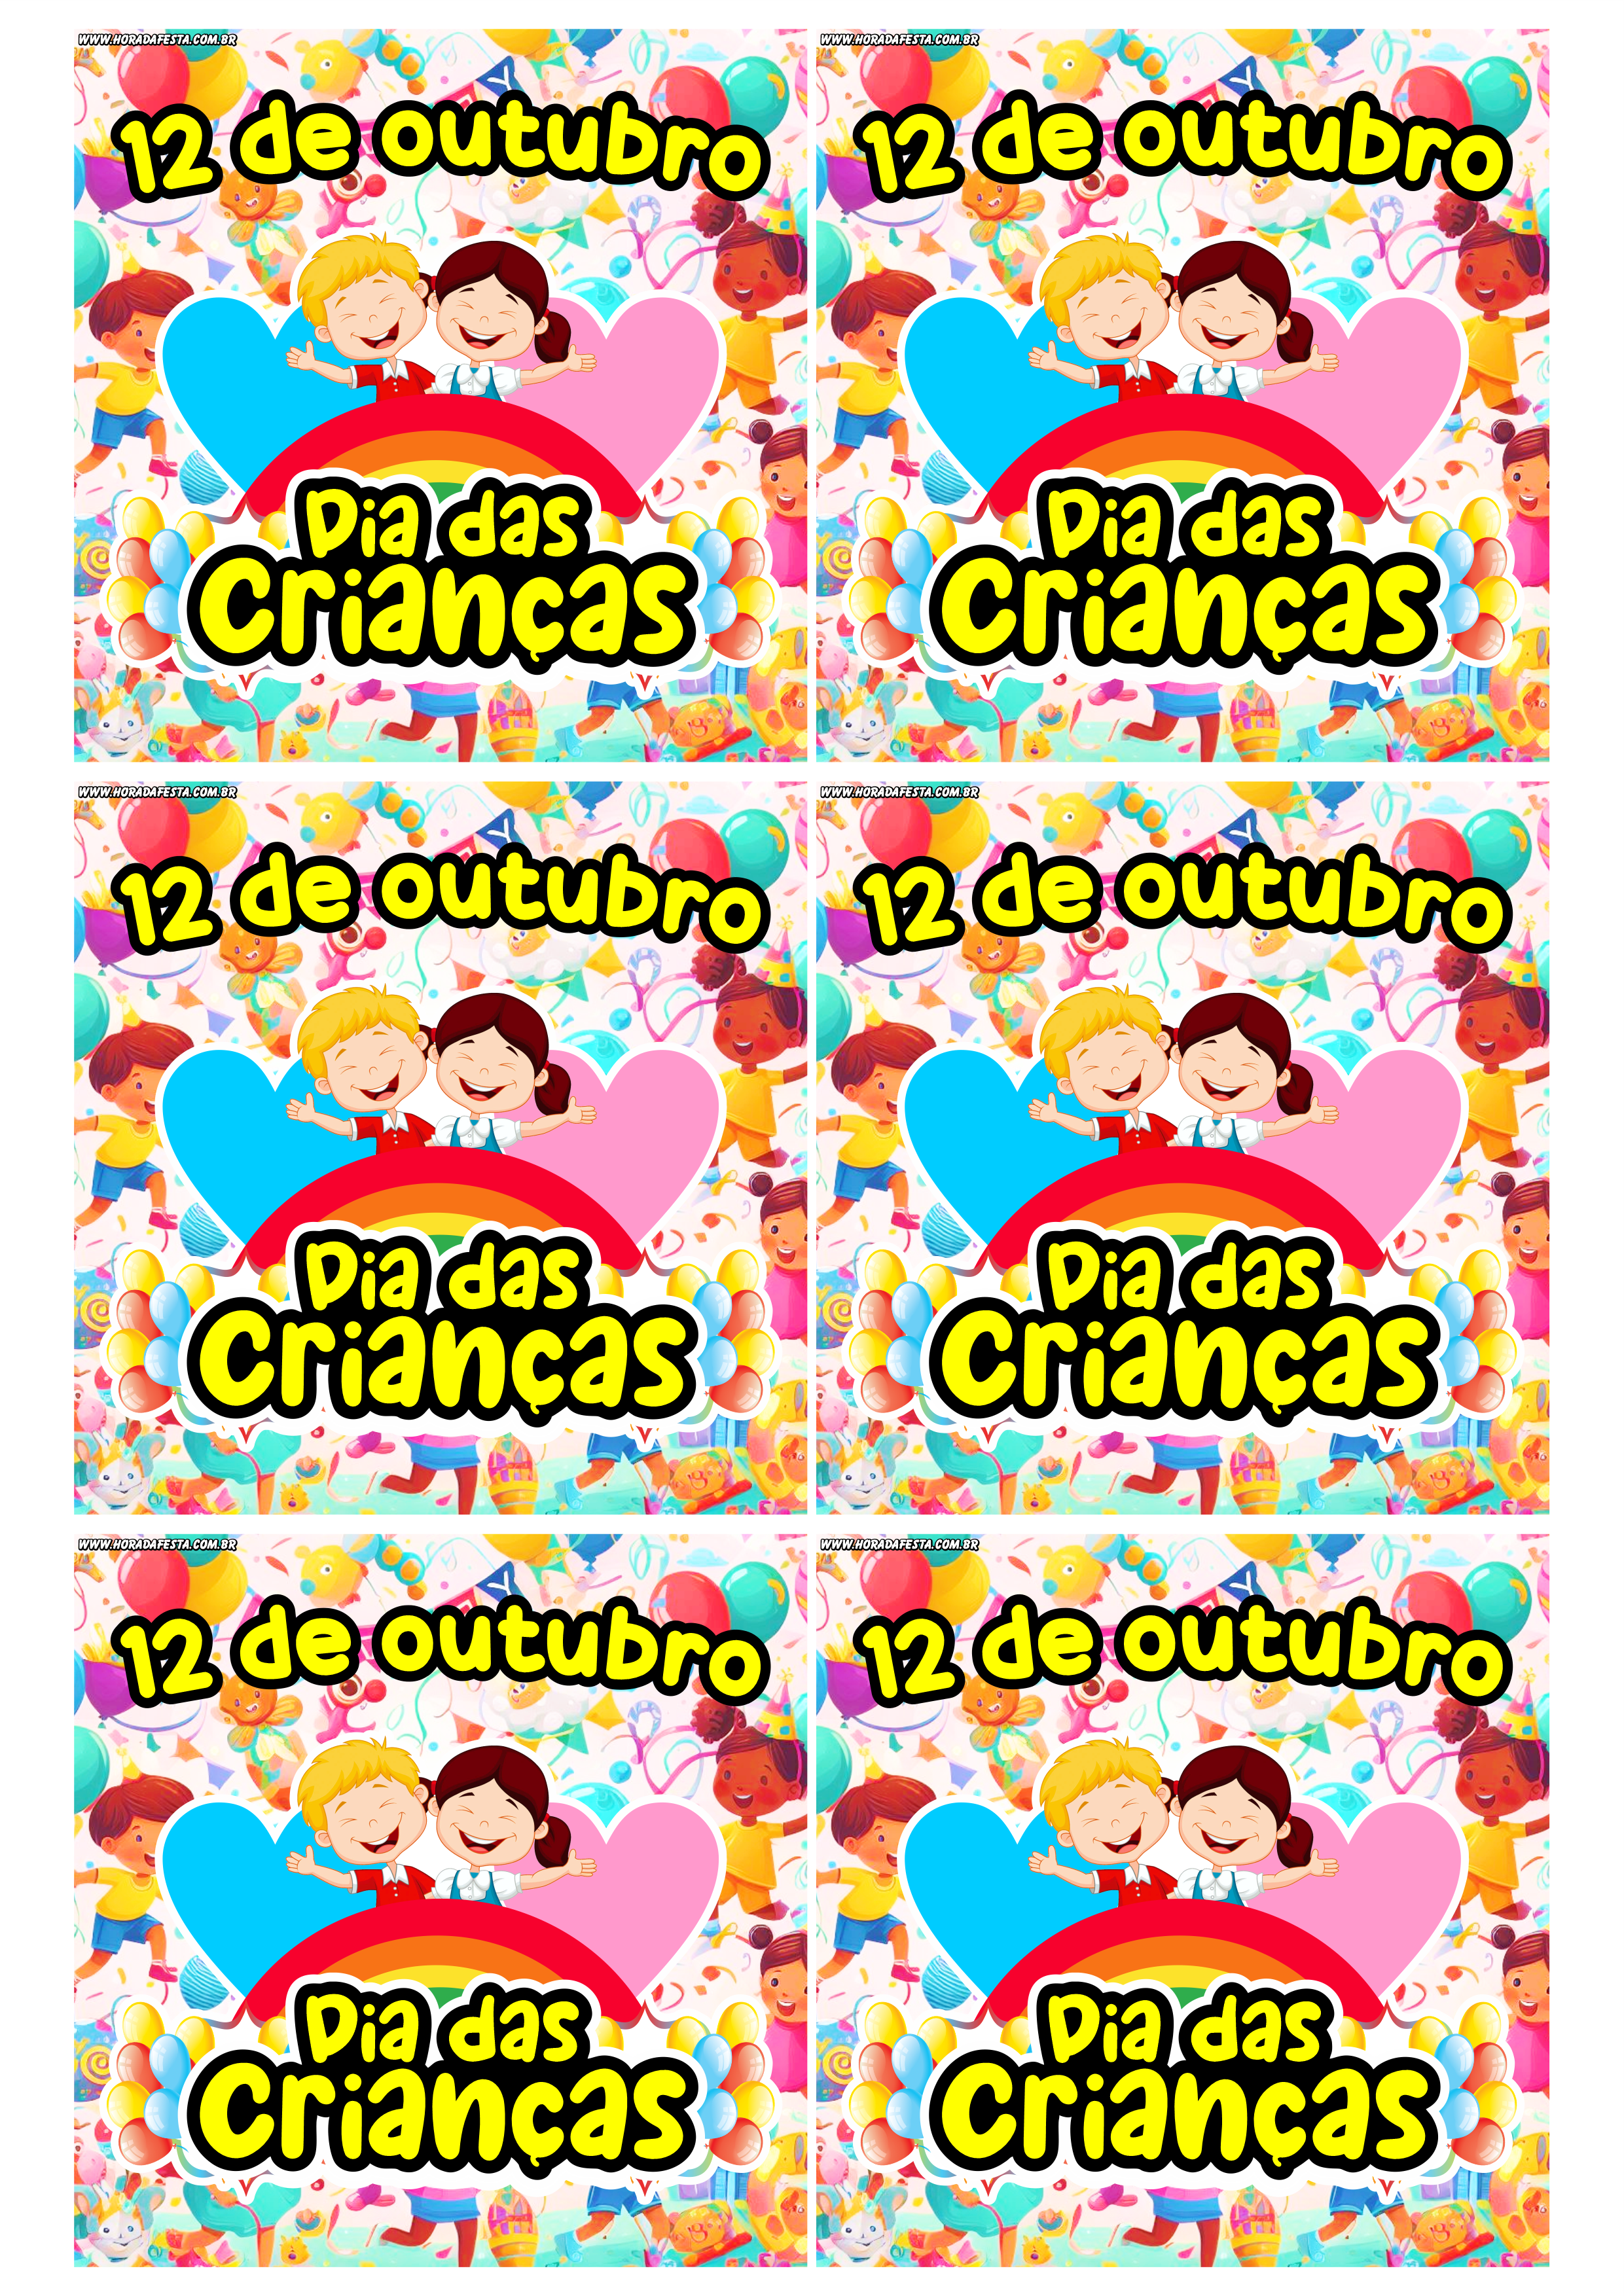 Dia das crianças 12 de outubro adesivo tag sticker etiqueta para decoração quadrado 2 imagens png